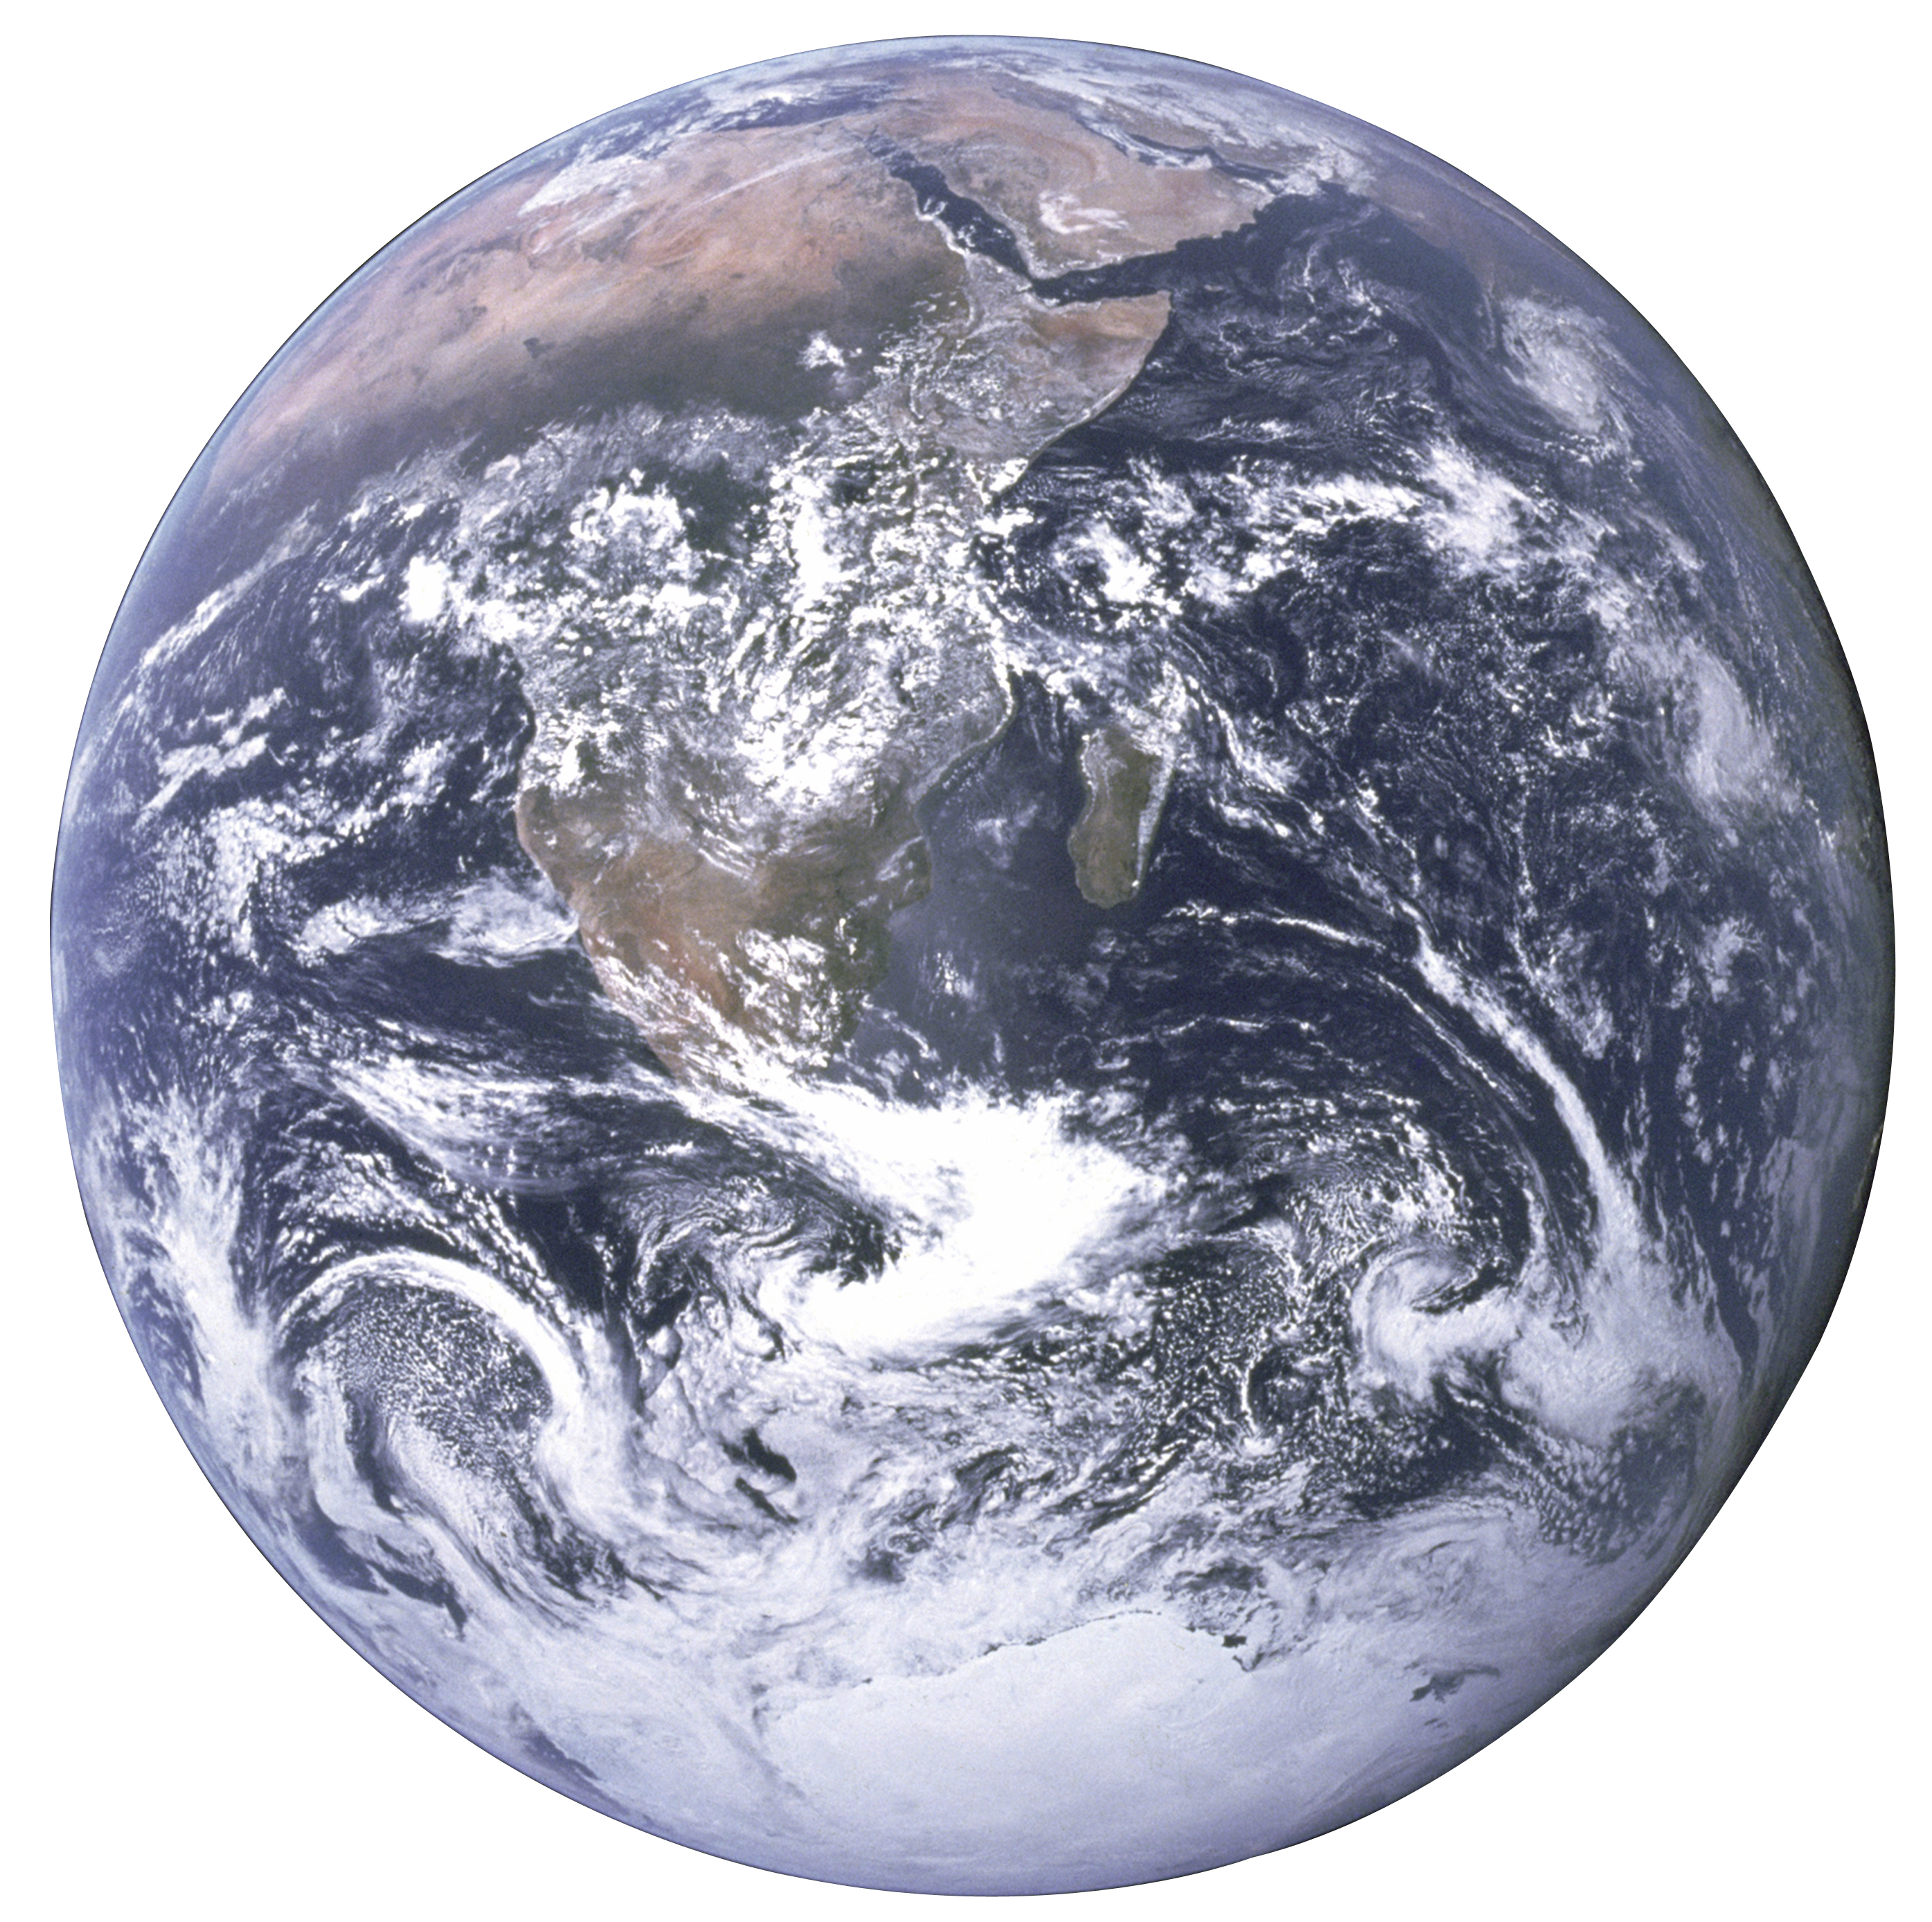 La terre vue depuis Apollo 17